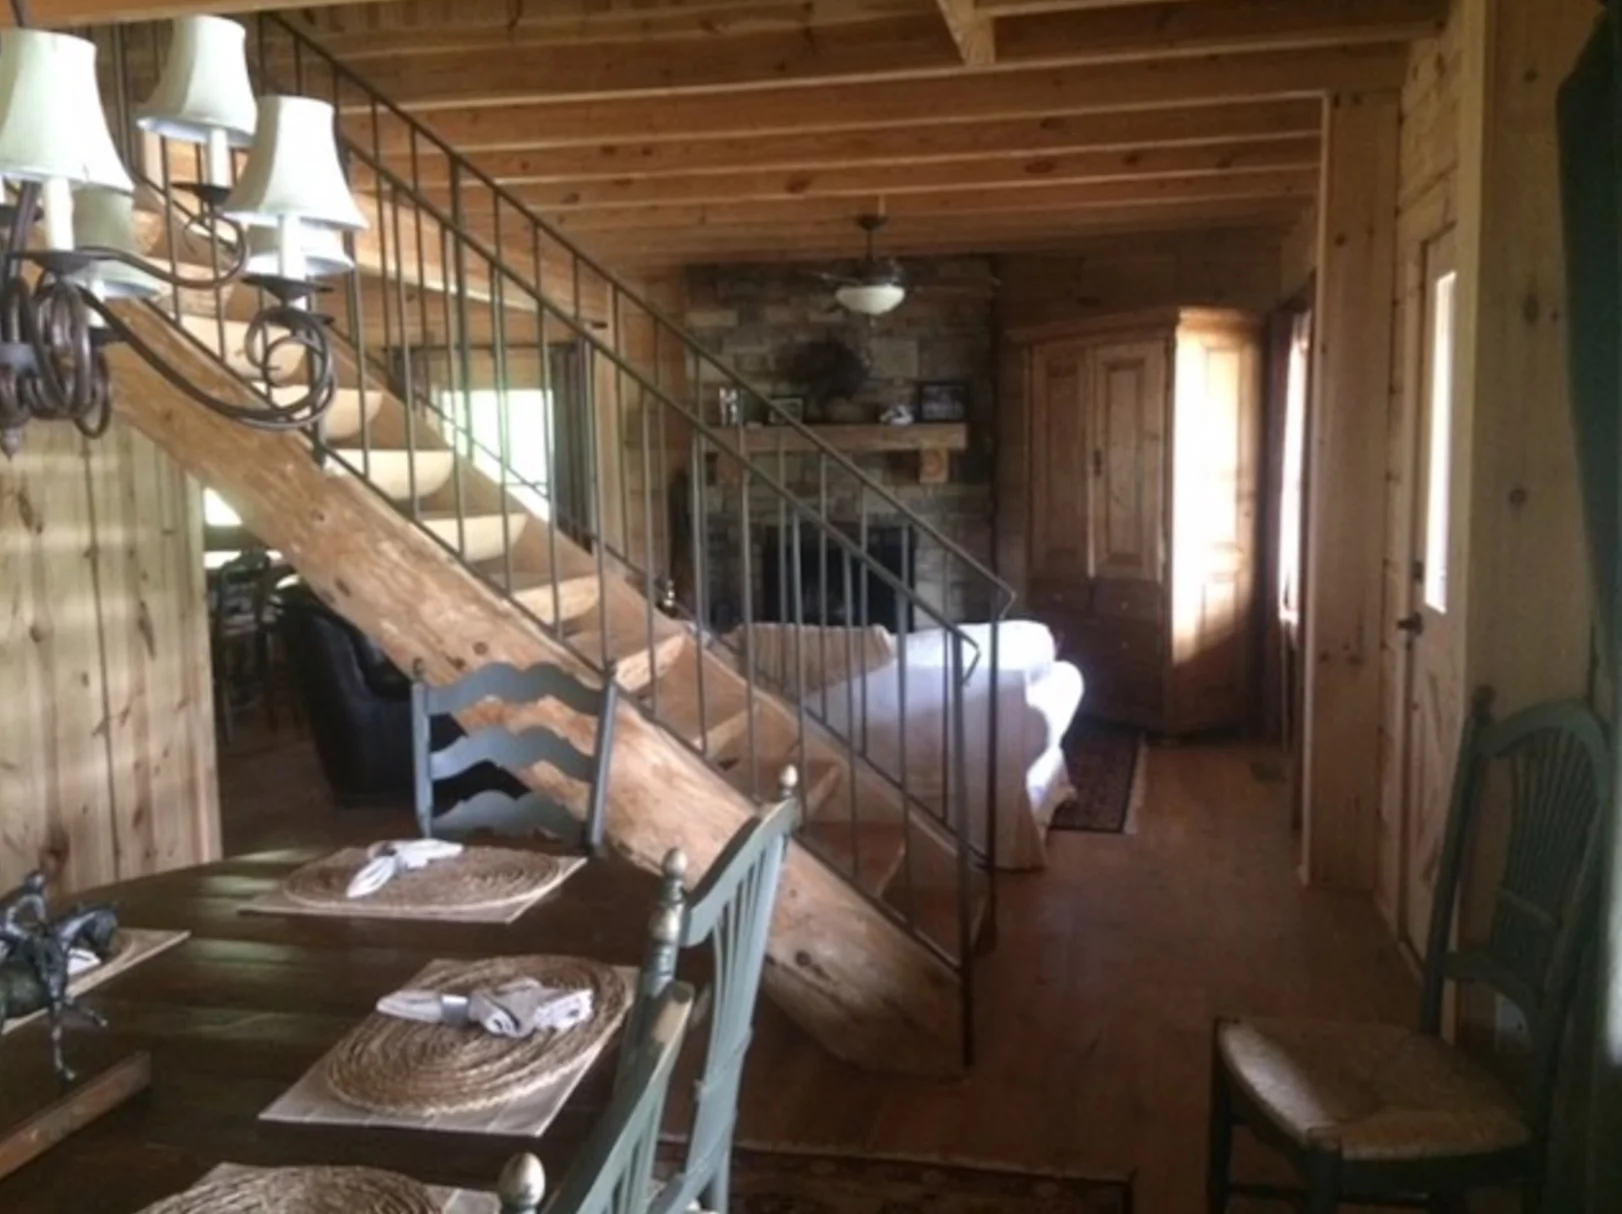 На Airbnb можна взяти в оренду будинок Тоні Старка з 'Месників' - фото 437407